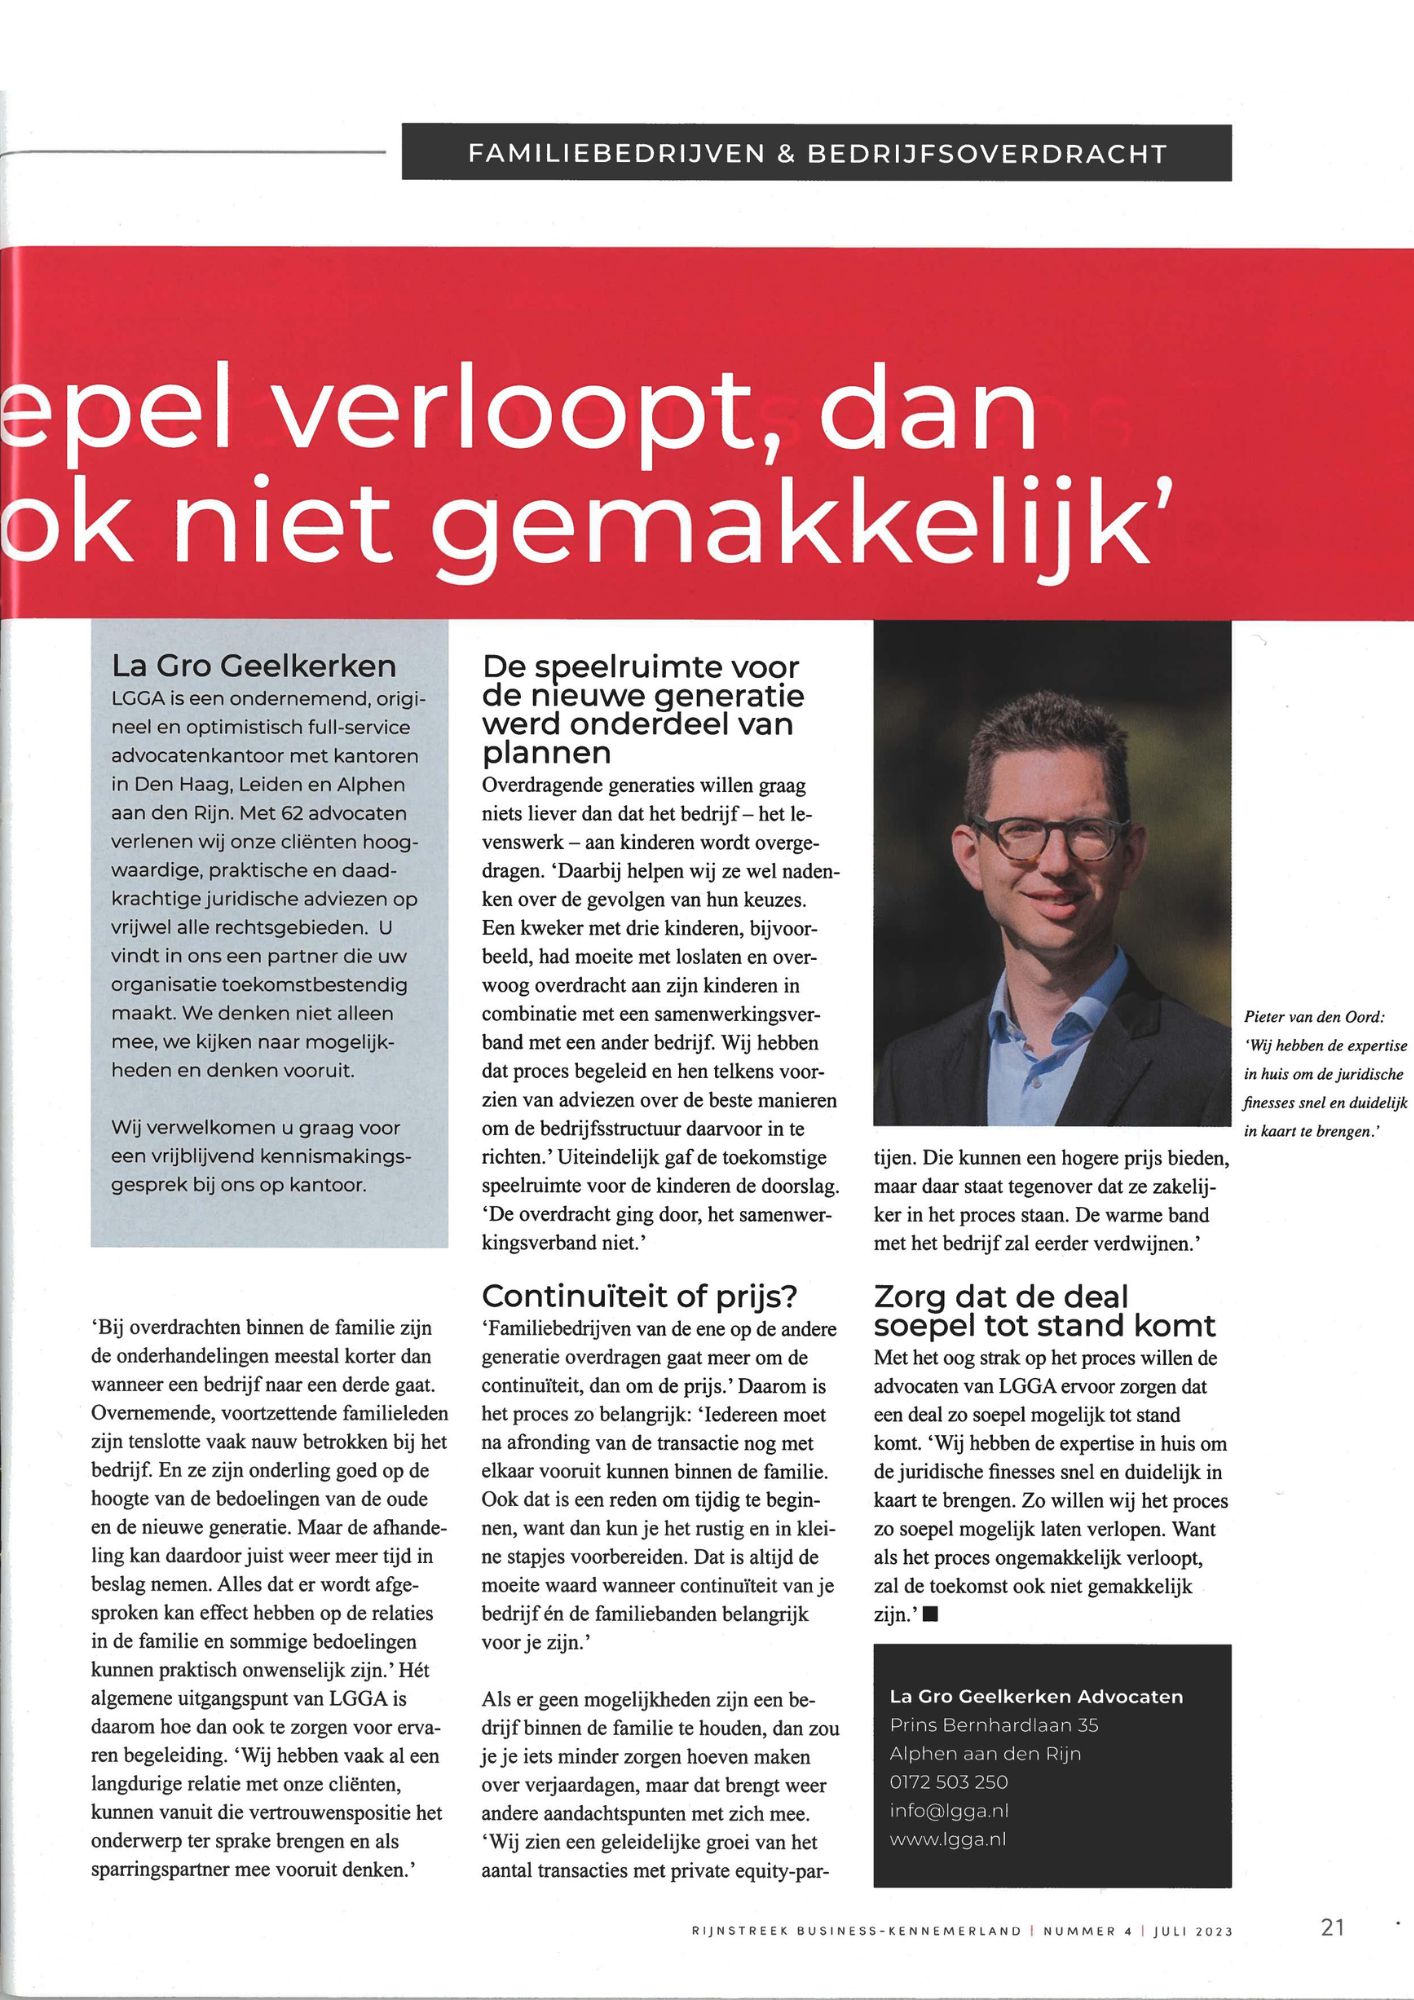 Pieter van Deurzen in de Business 3